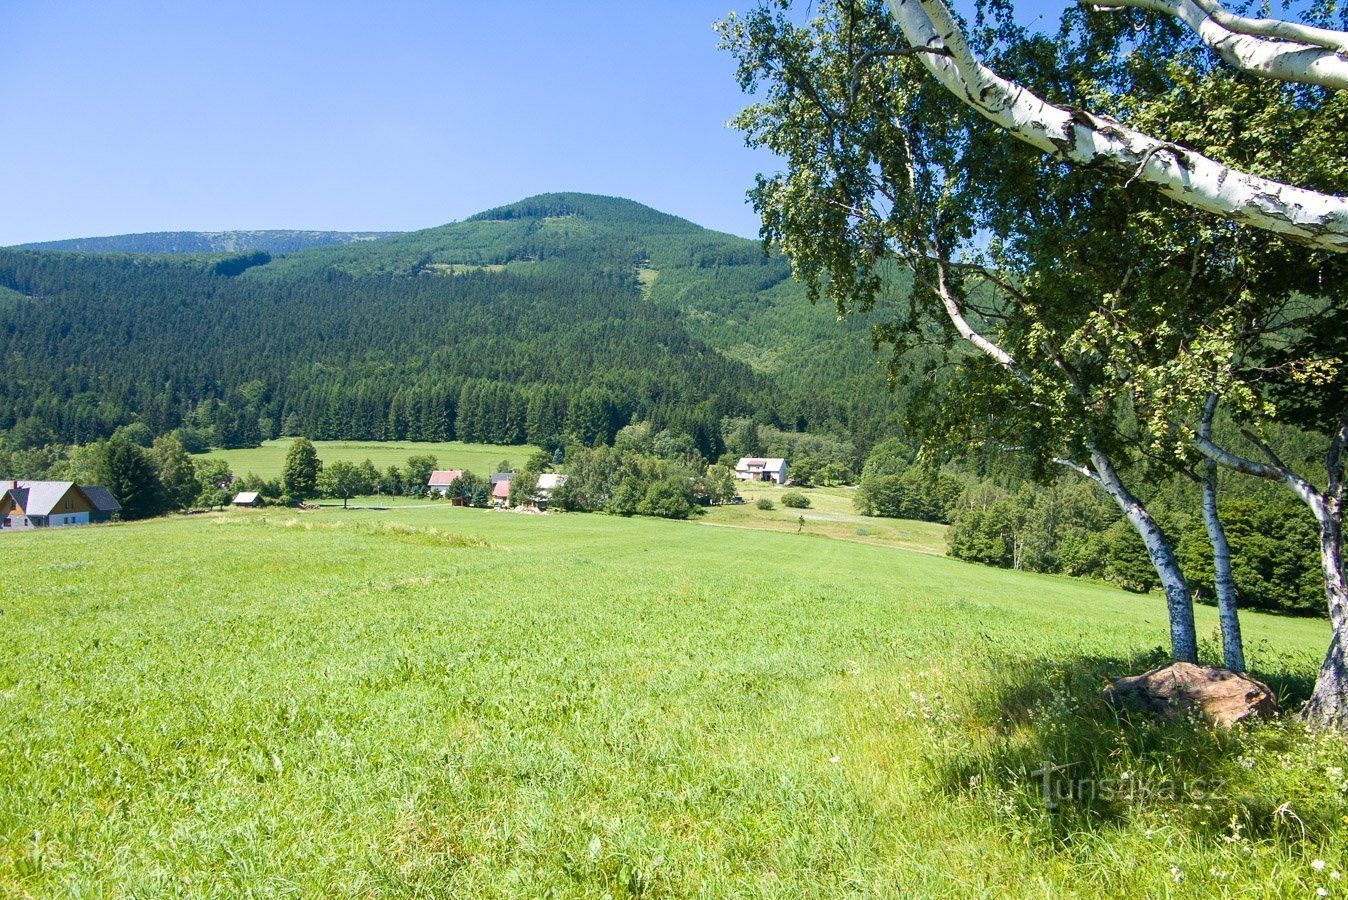 Točník e a ligeiramente escondida Červená hora erguem-se acima de Filipovice